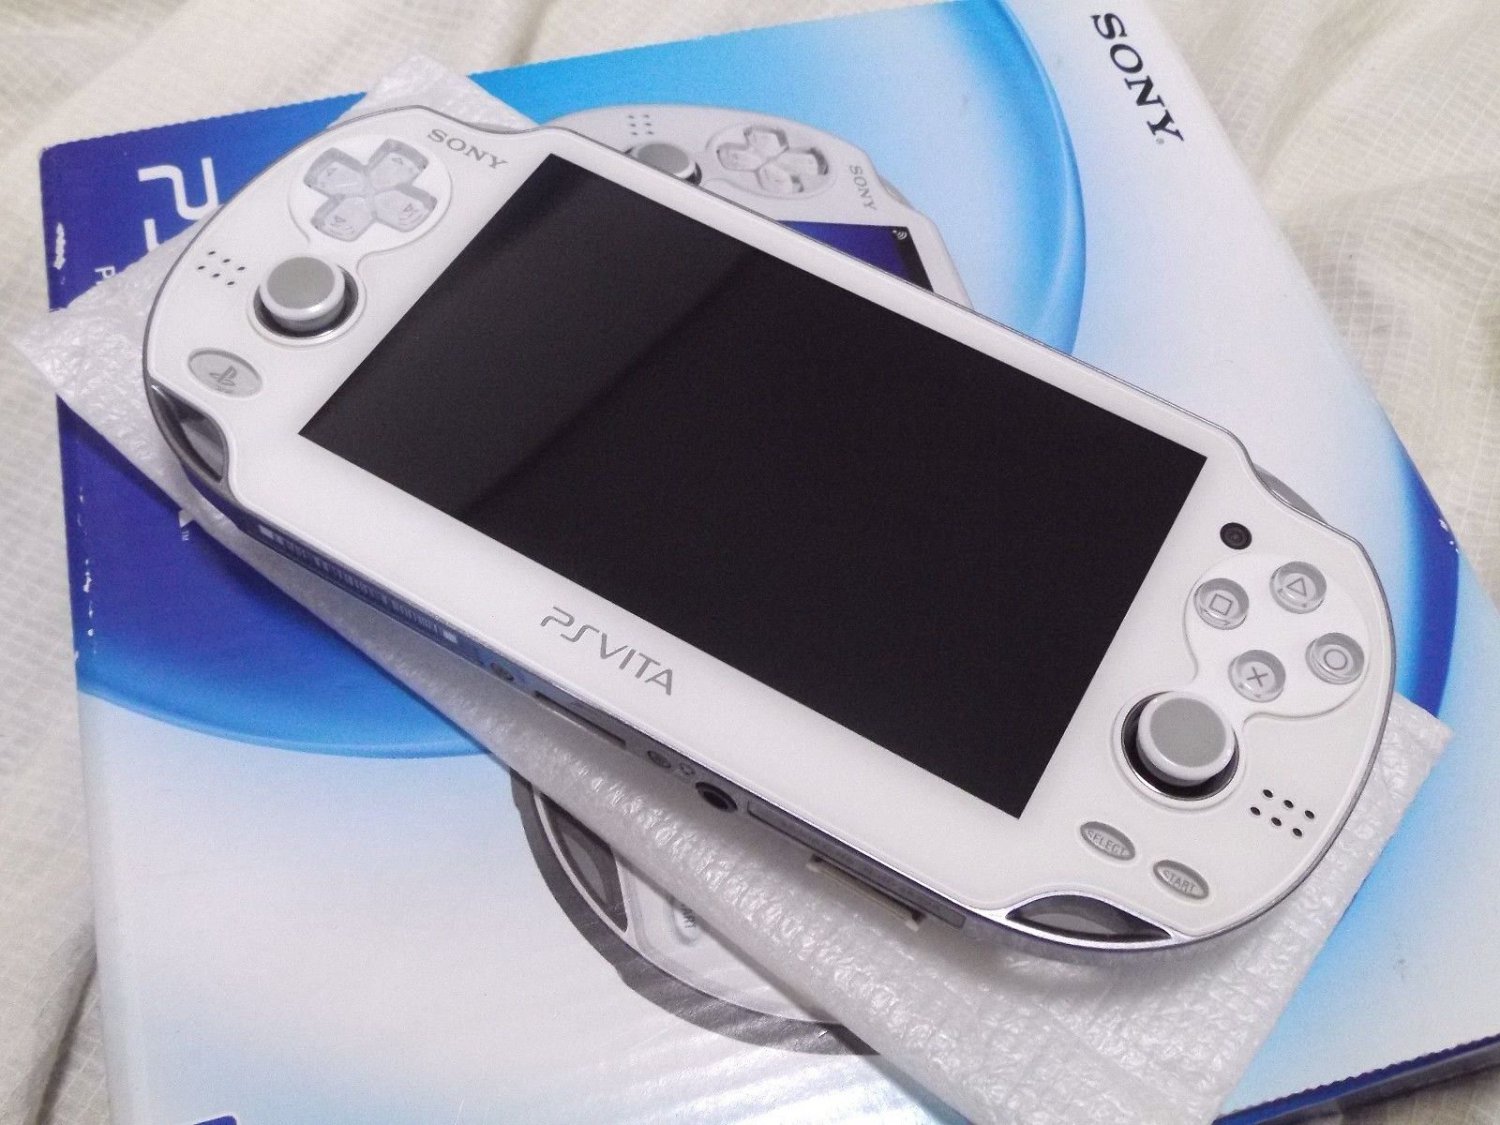 Used Sony Ps Vita Console System Pch 1000 Za02 White Wi Fi Model